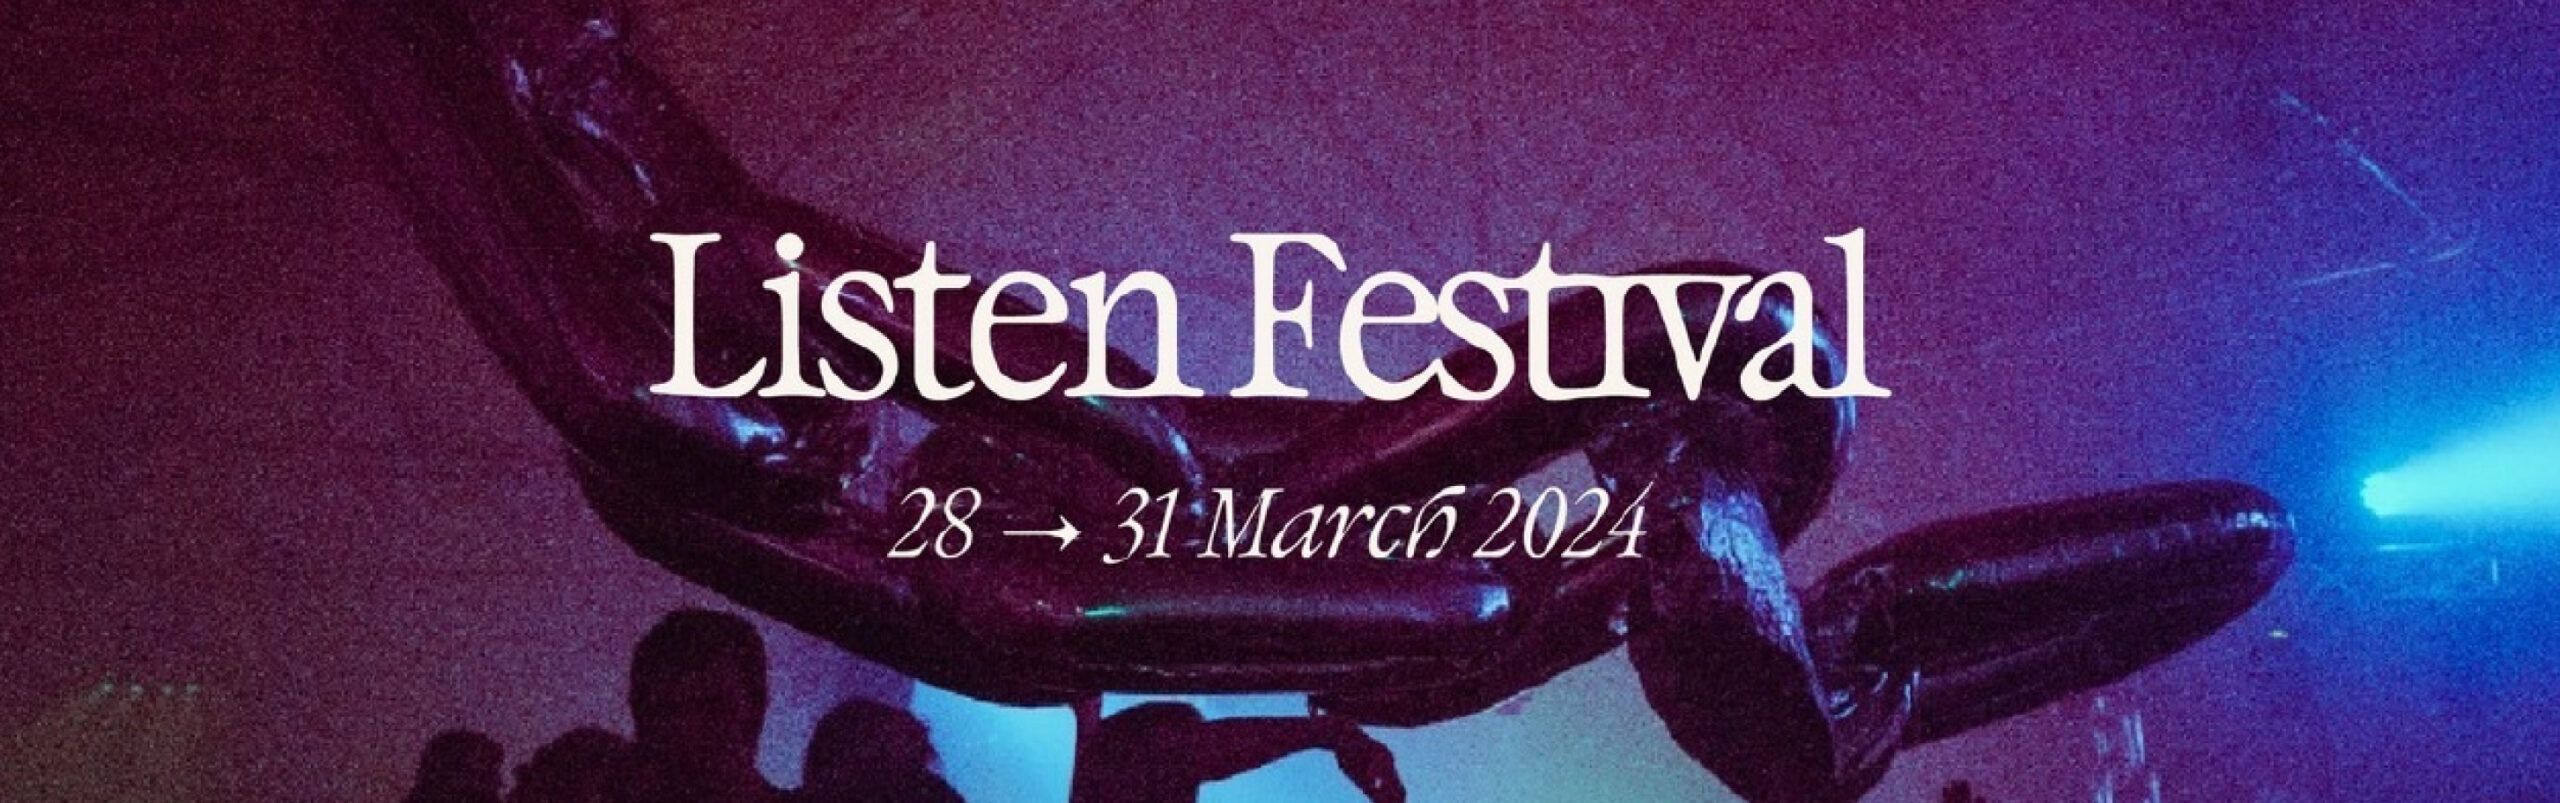 Listen! Festival header